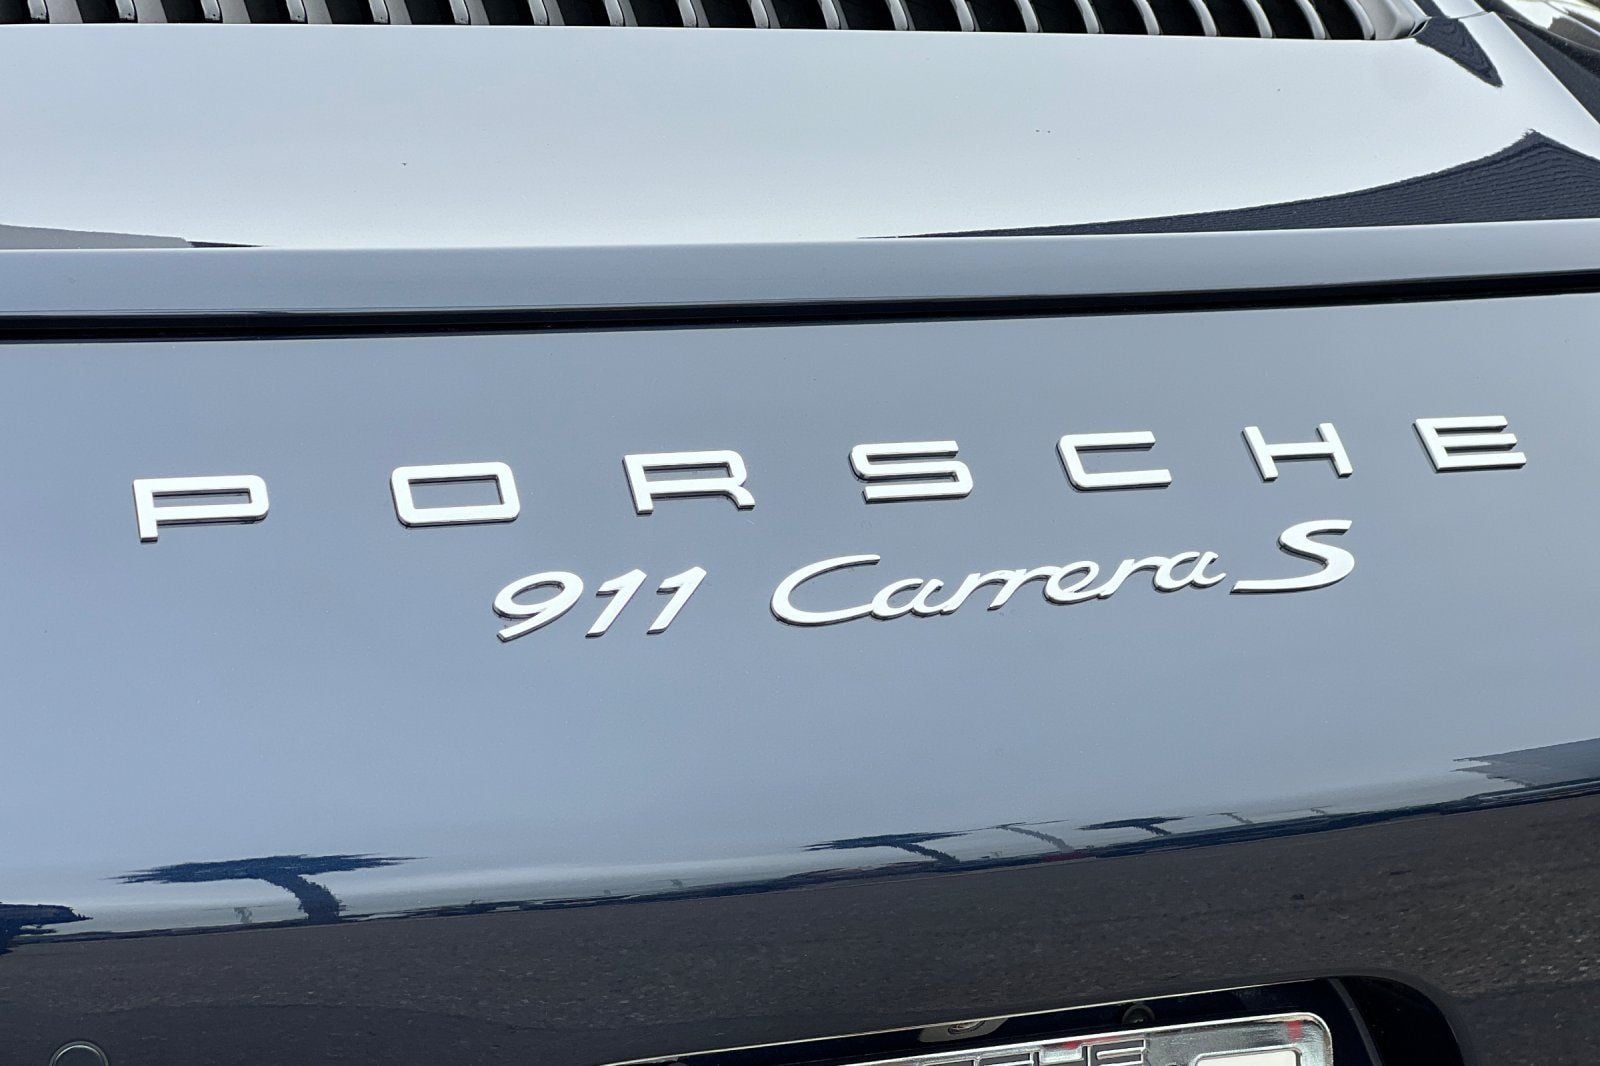 2017 Porsche 911 - 2017 PORSCHE 911 S COUPE // 15K MILES, CPO, NIGHT BLUE OVER GRAPHITE/CHALK! - Used - San Luis Obispo, CA 93405, United States